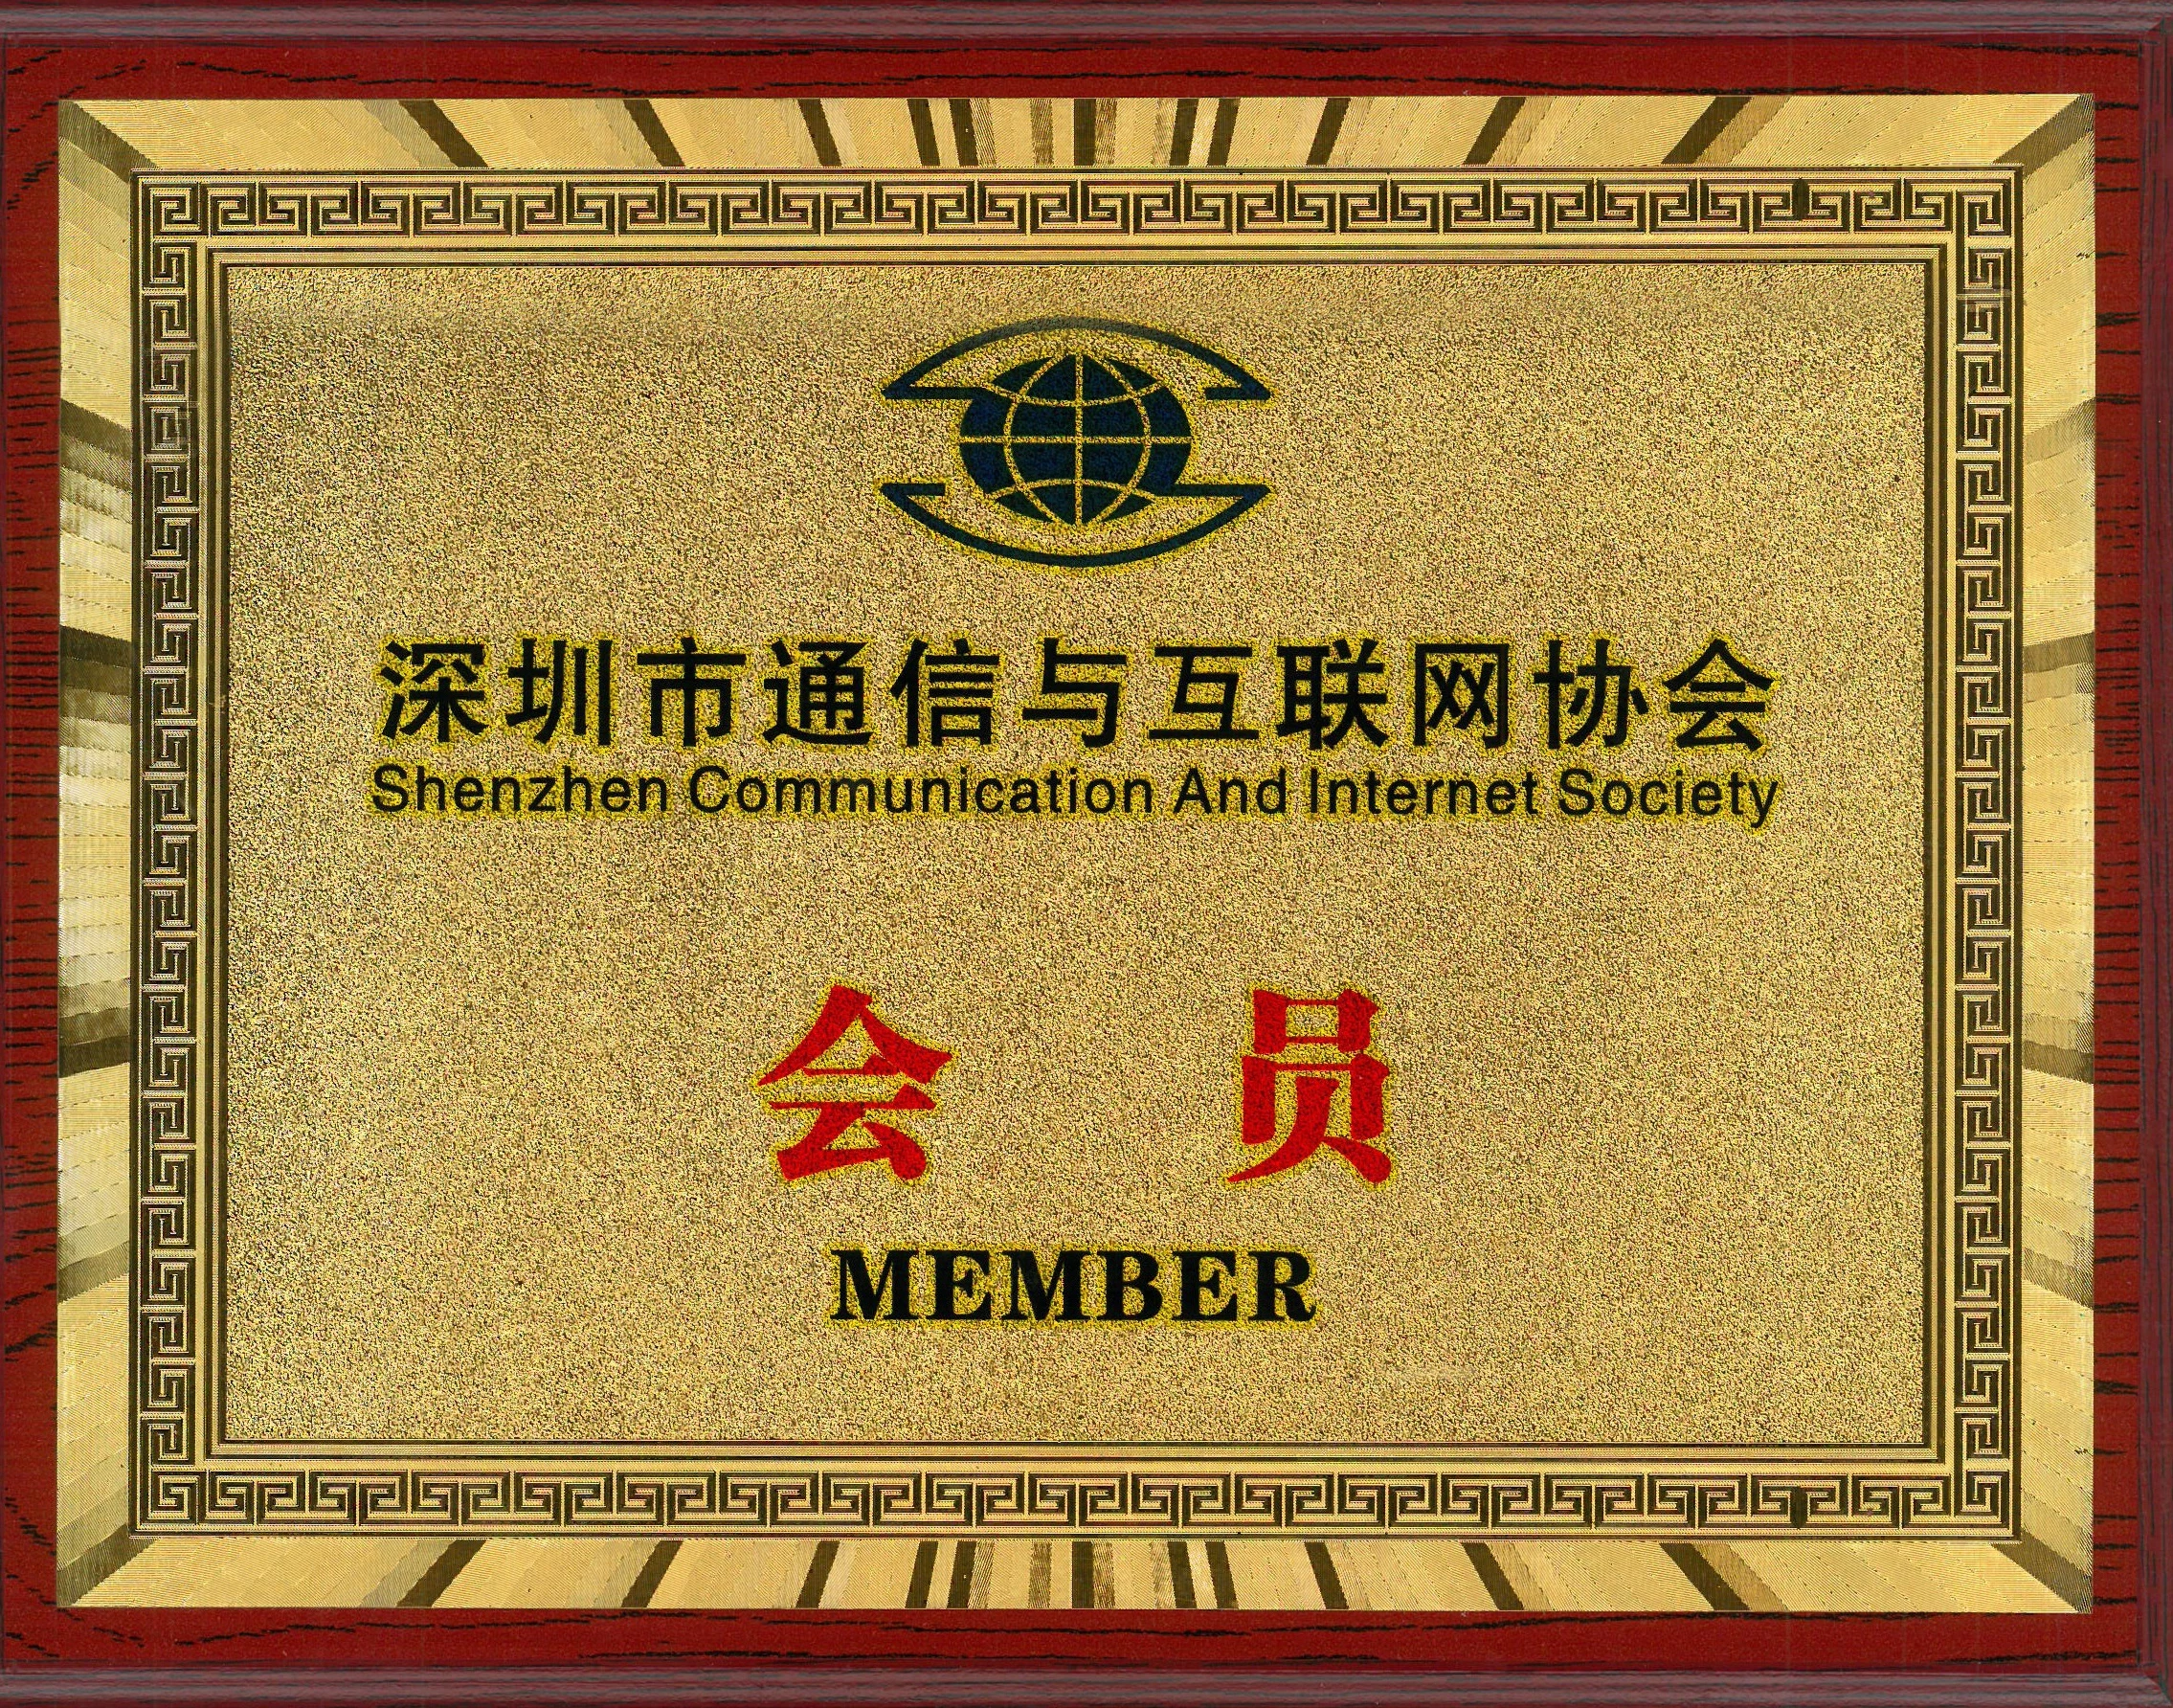 深圳市通信与互联网协会会员